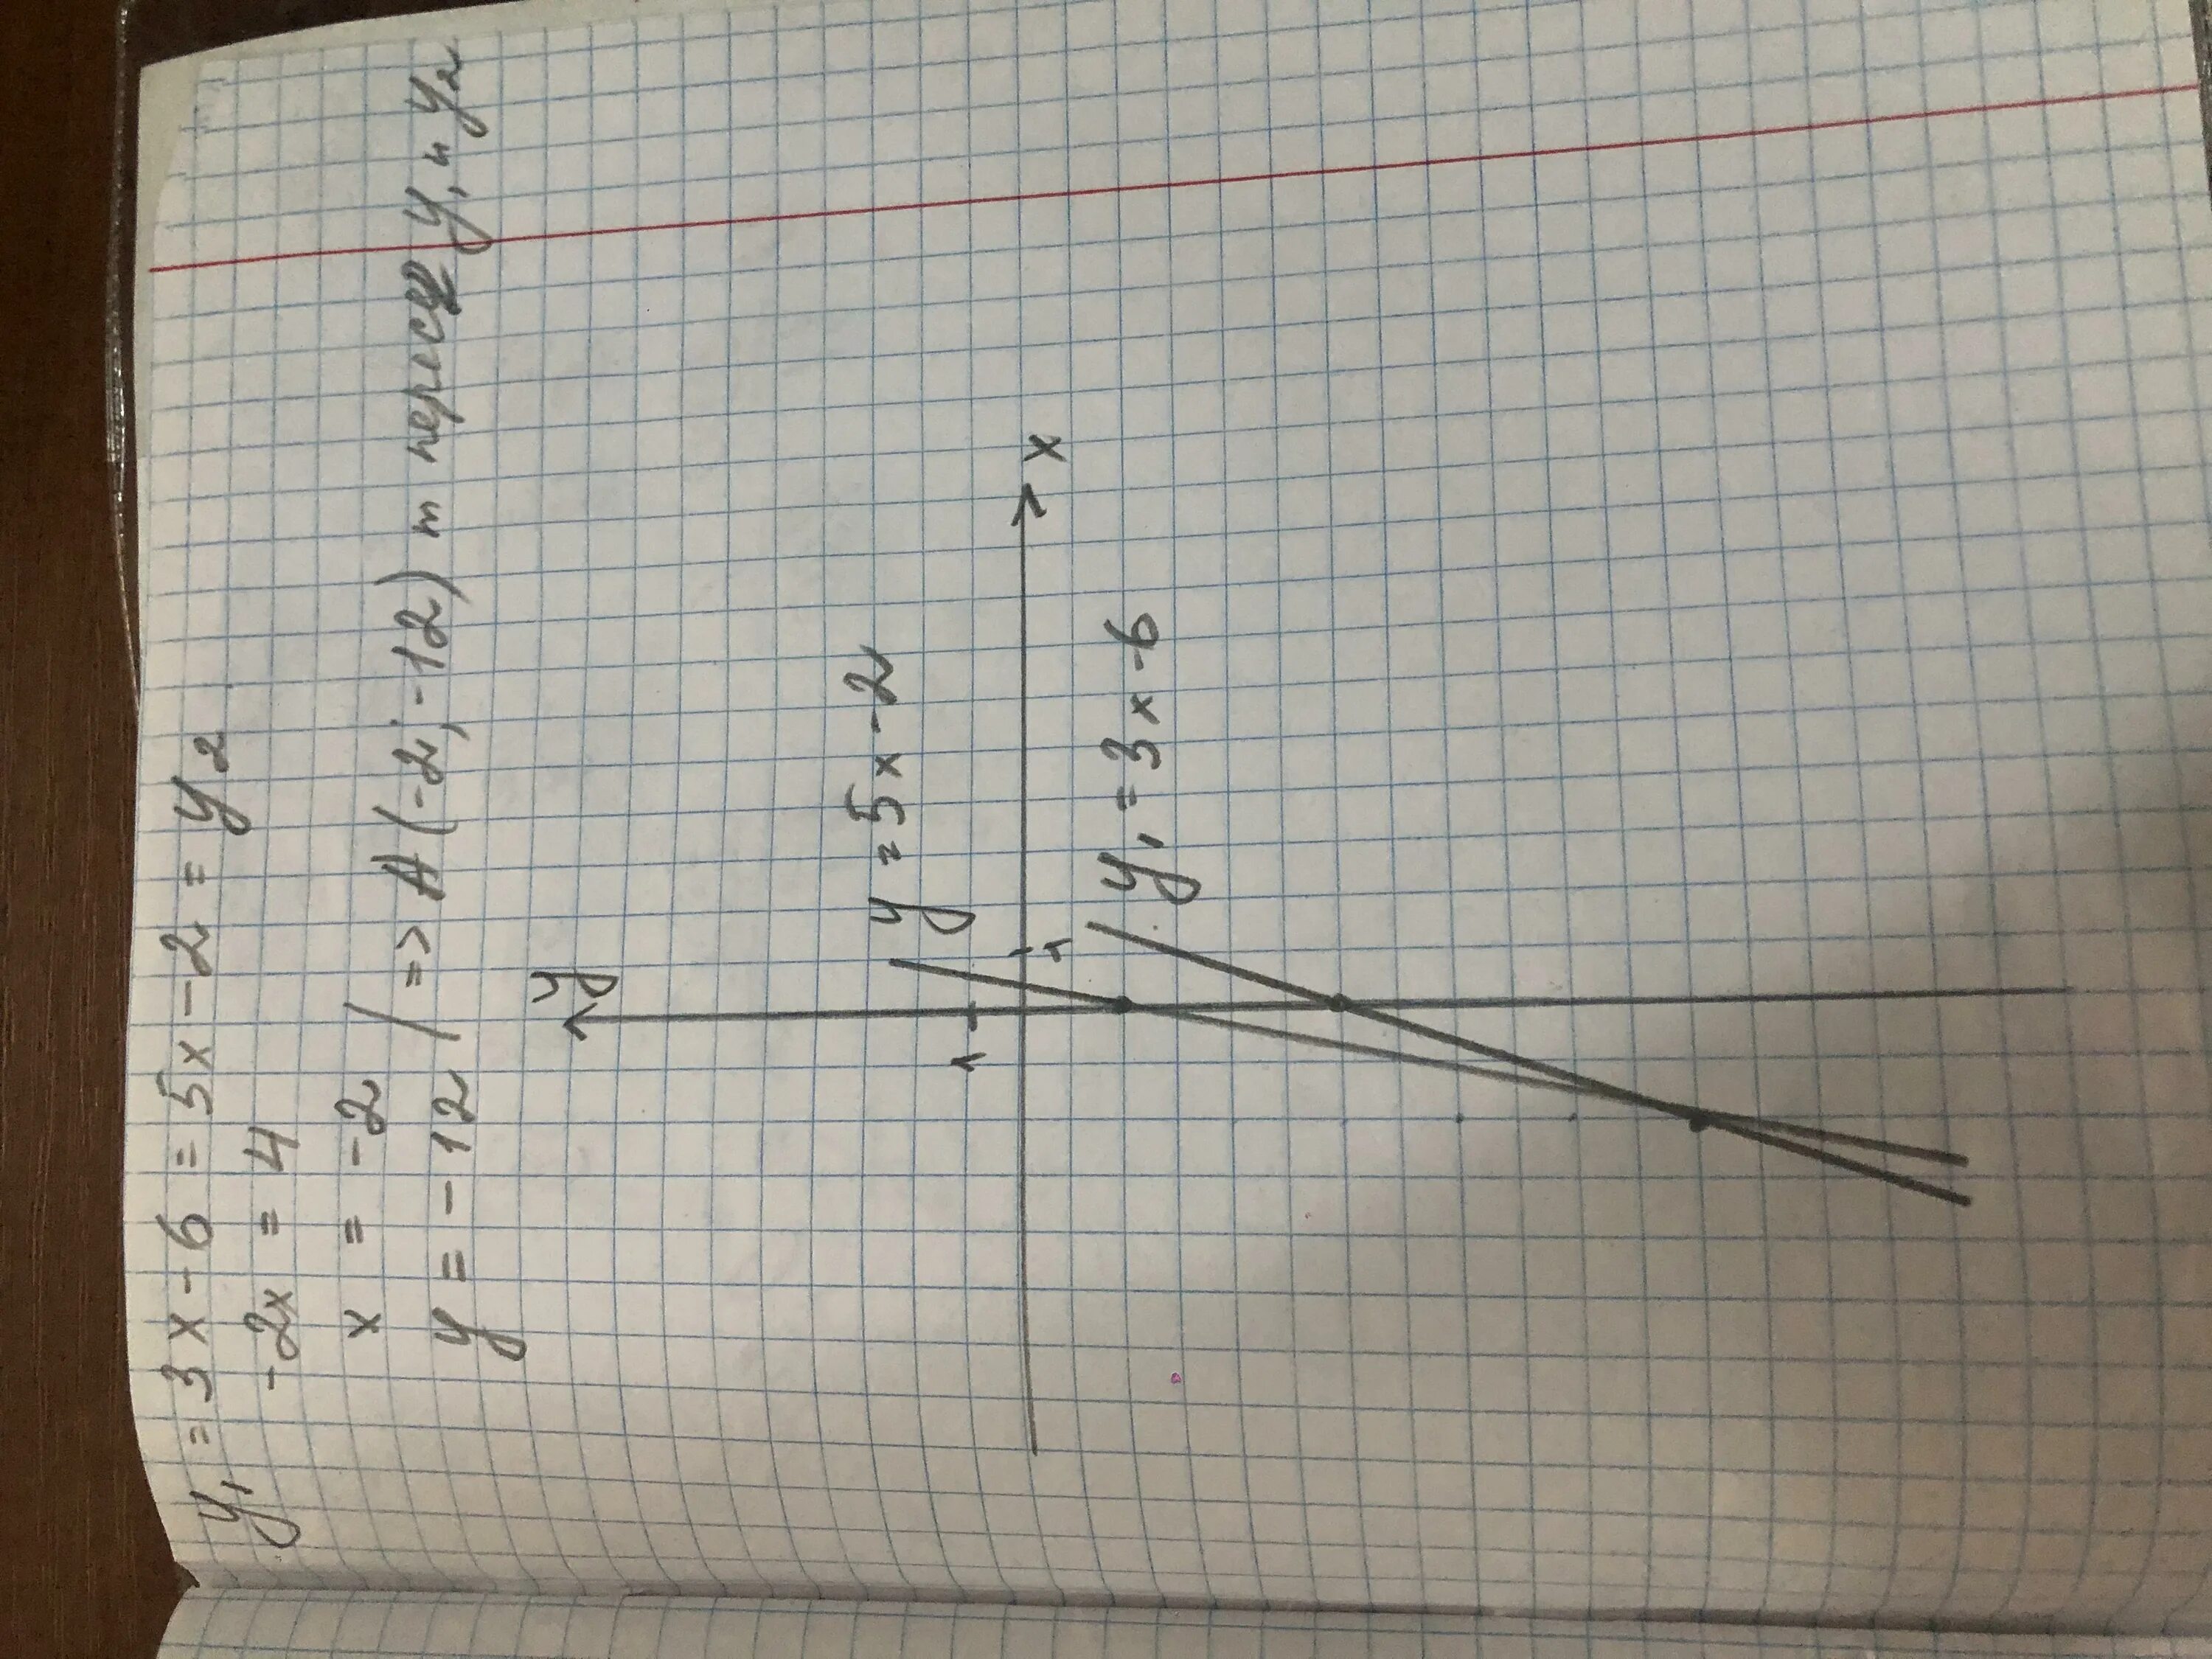 3 57 3 5. В какой точке пересекаются графики. У = -5,5х - 6 пересекаются в точке. Выразить диаграммой пересекающиеся параметры.